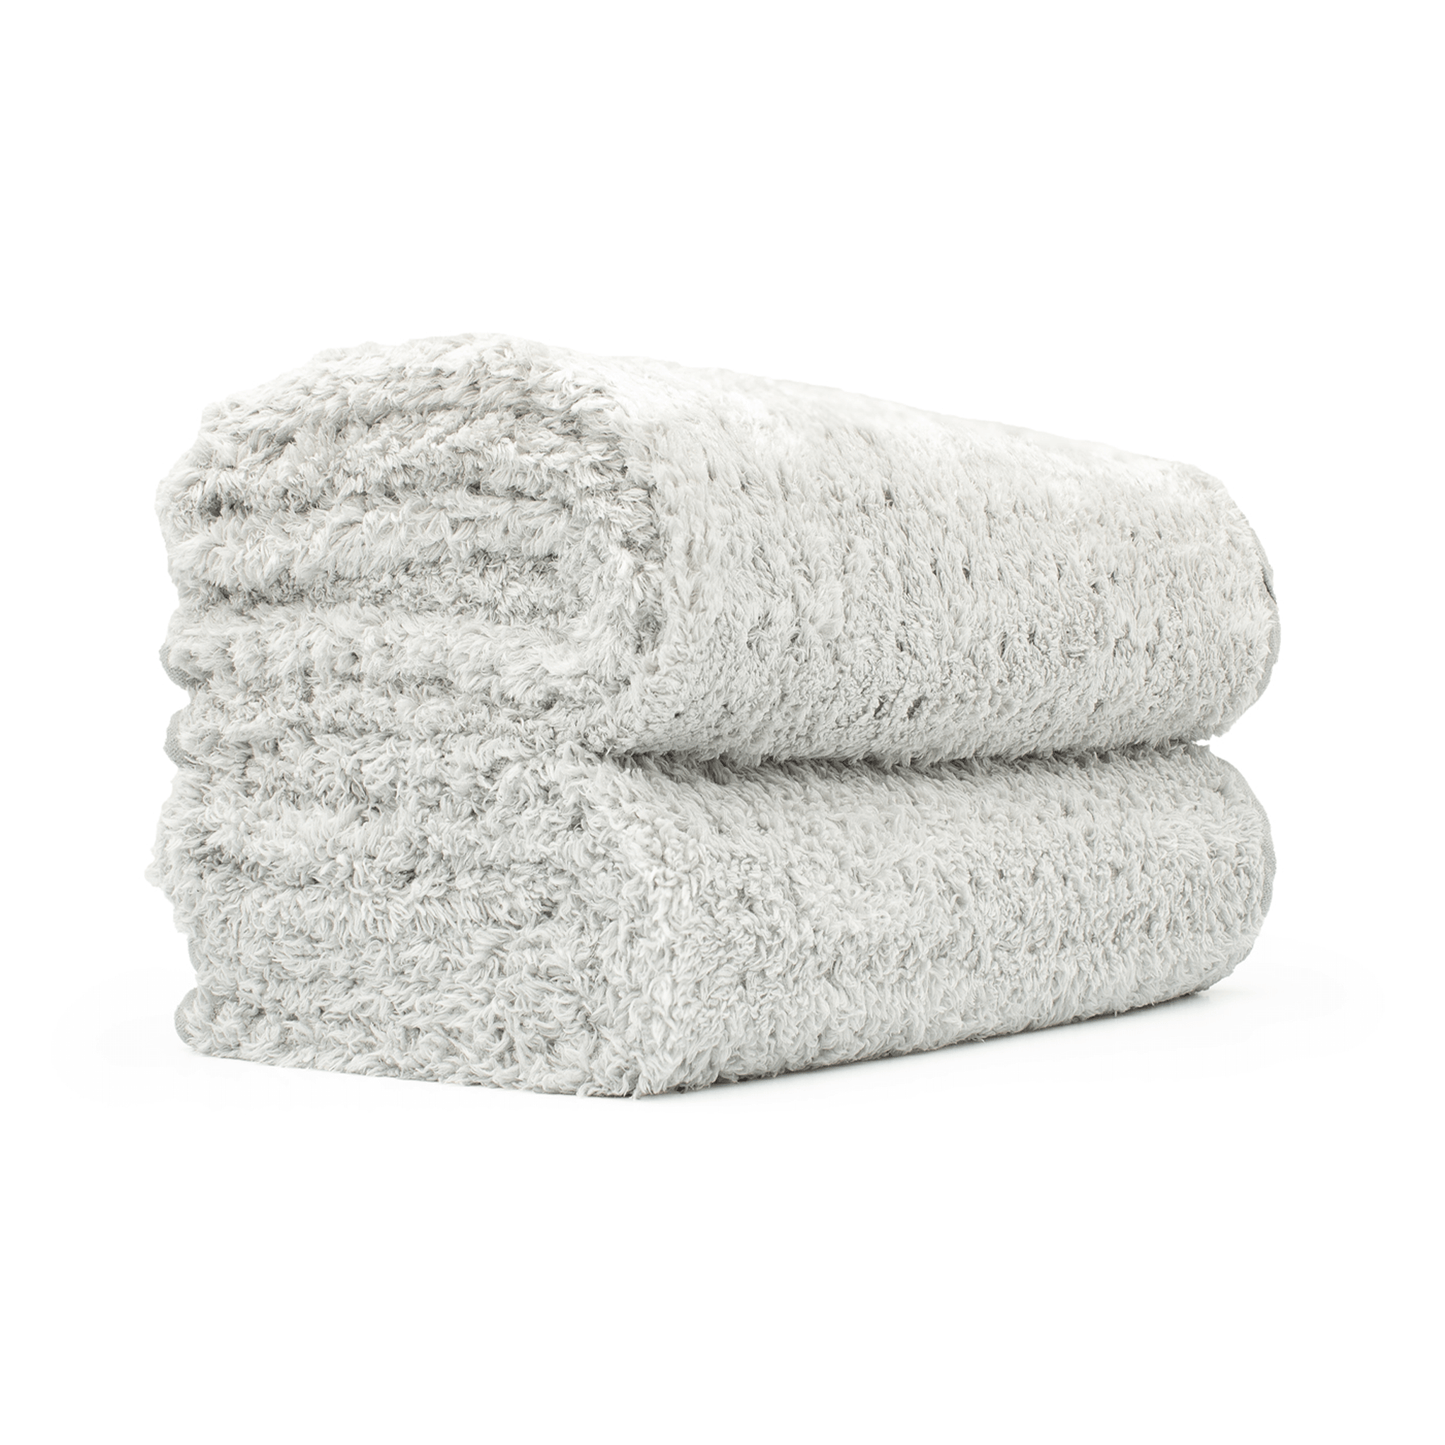 Platinum Pluffle Premium Detailing Towel